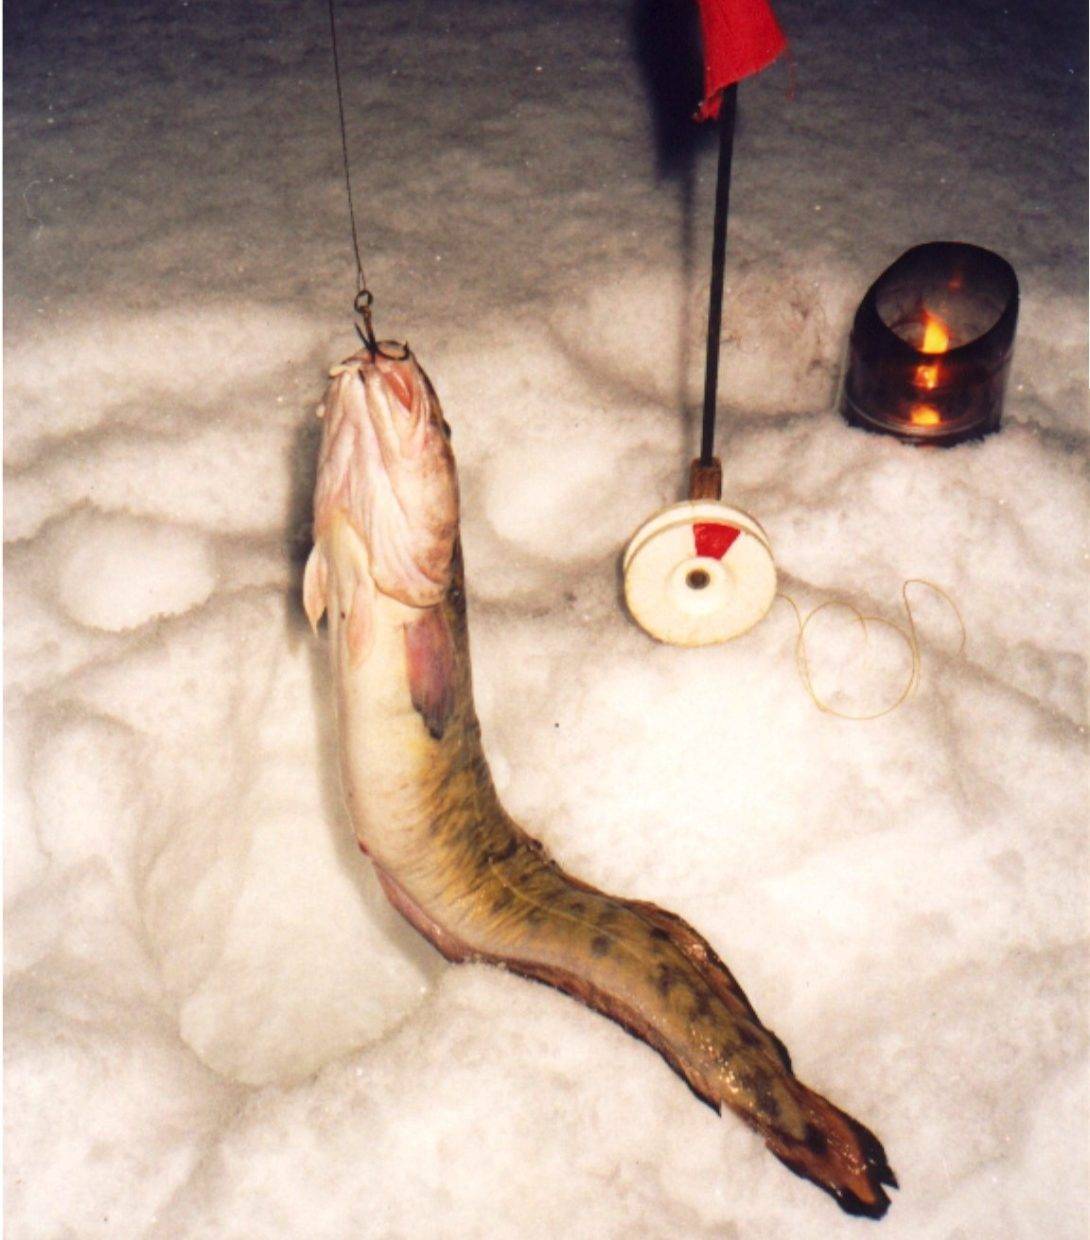 Ловля налима зимой – где искать рыбу и чем прикармливать [2019]